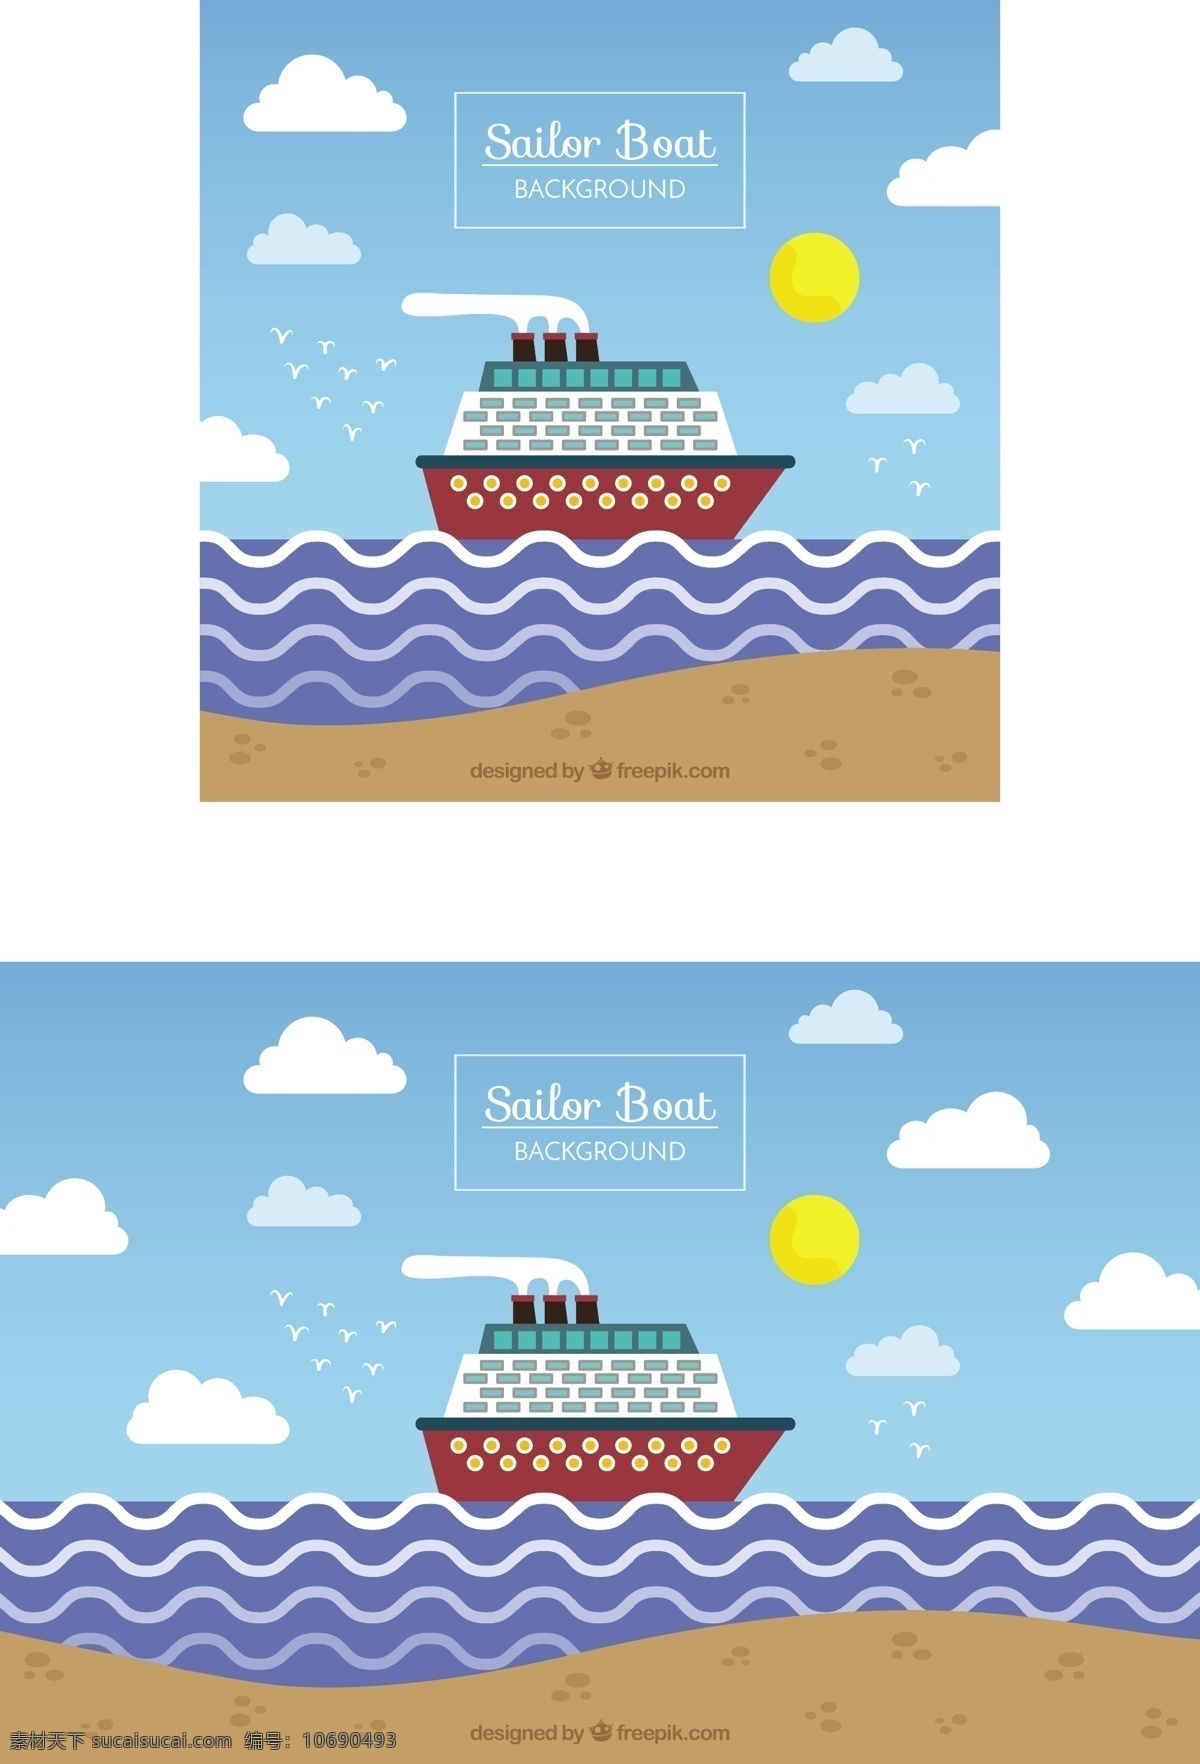 平面设计 中 水手 船 背景 海滩 平面 运输 航海 装饰 海运 帆船 游船